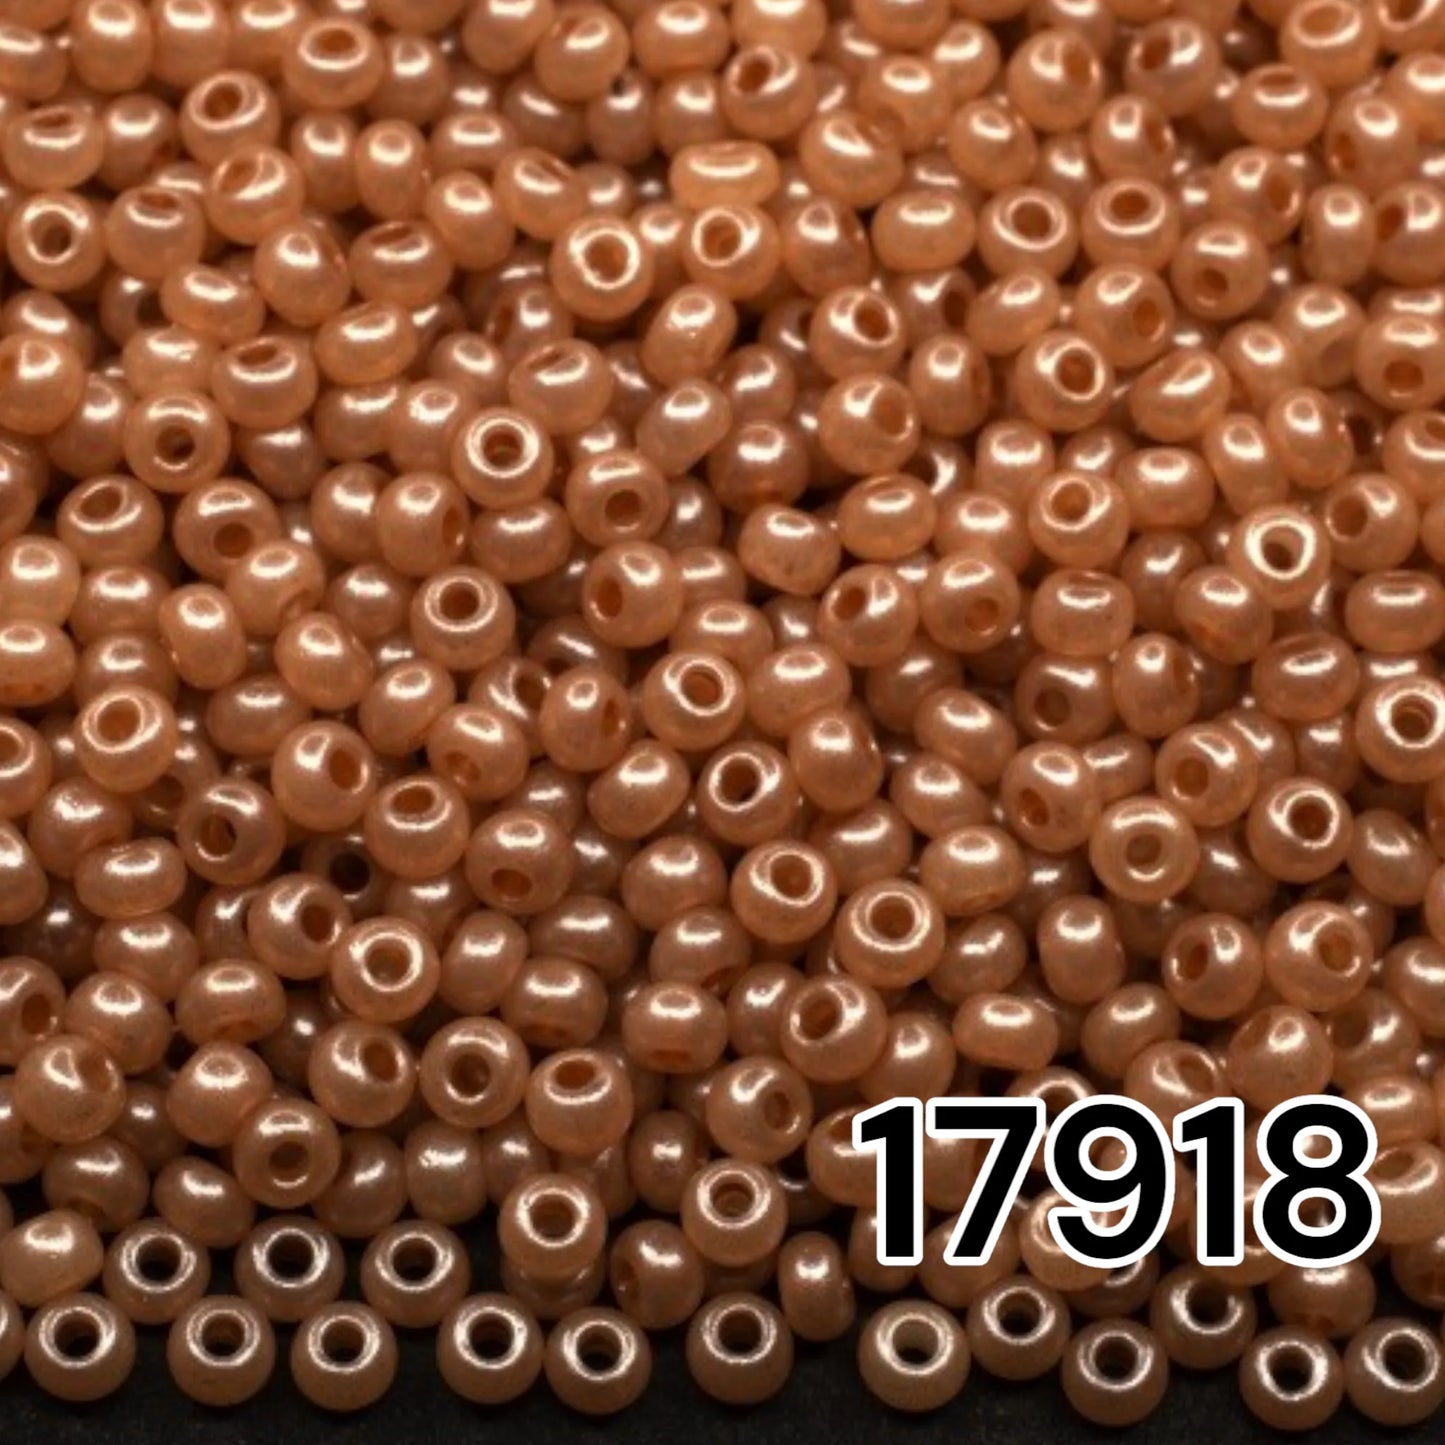 17918 Rocailles tchèques PRECIOSA rondes 10/0 beige marron. Albâtre - Terra Pearl.